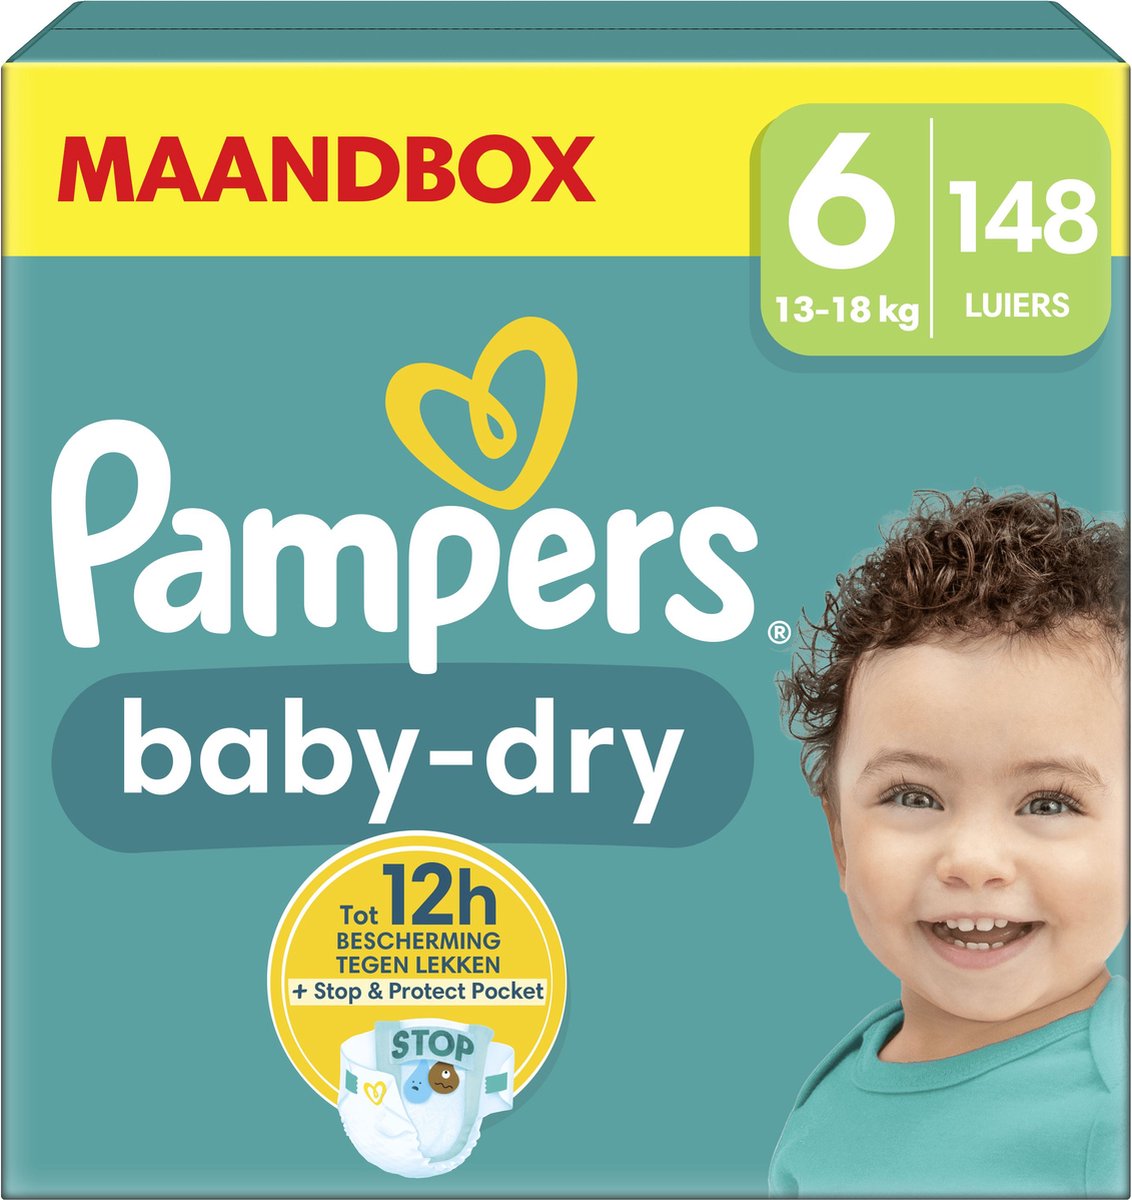 Pampers Baby-Dry - Maat 6 (13kg-18kg) - 148 Luiers - Maandbox - Pampers